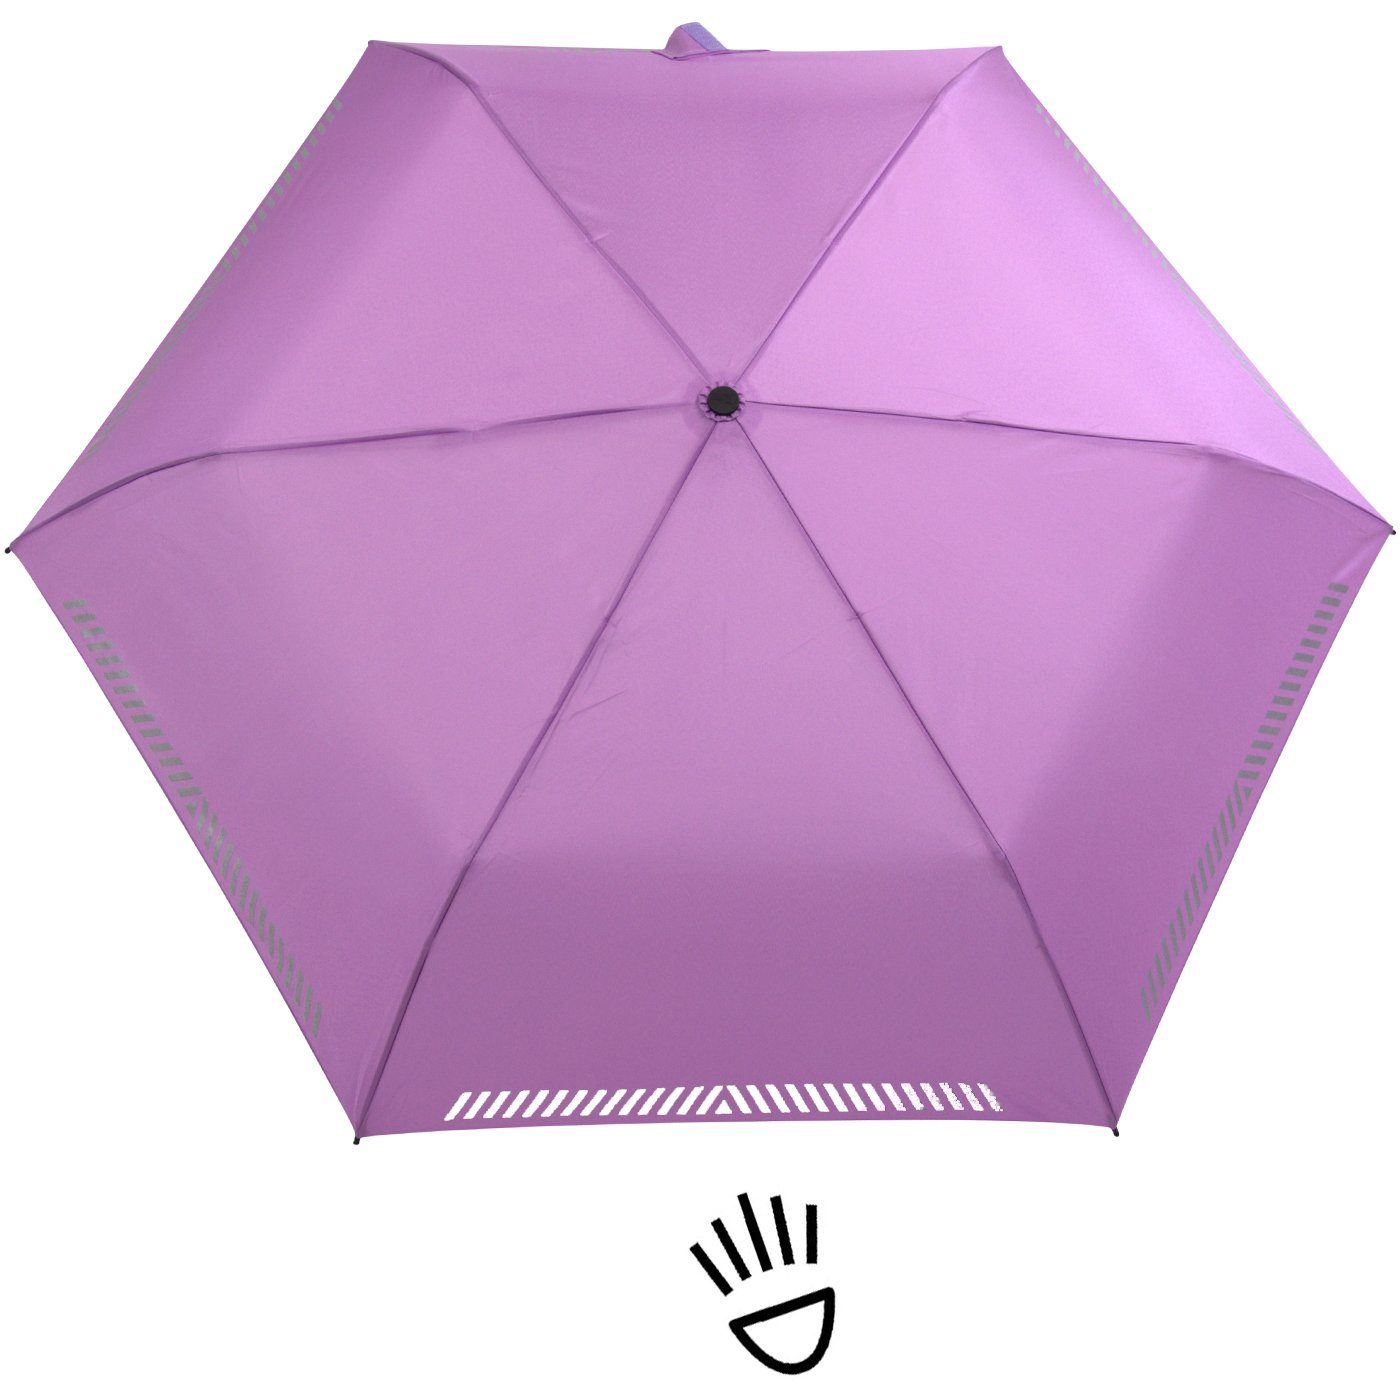 Kinderschirm iX-brella Taschenregenschirm hell-lila Reflex-Streifen durch Auf-Zu-Automatik, - Sicherheit mit reflektierend,